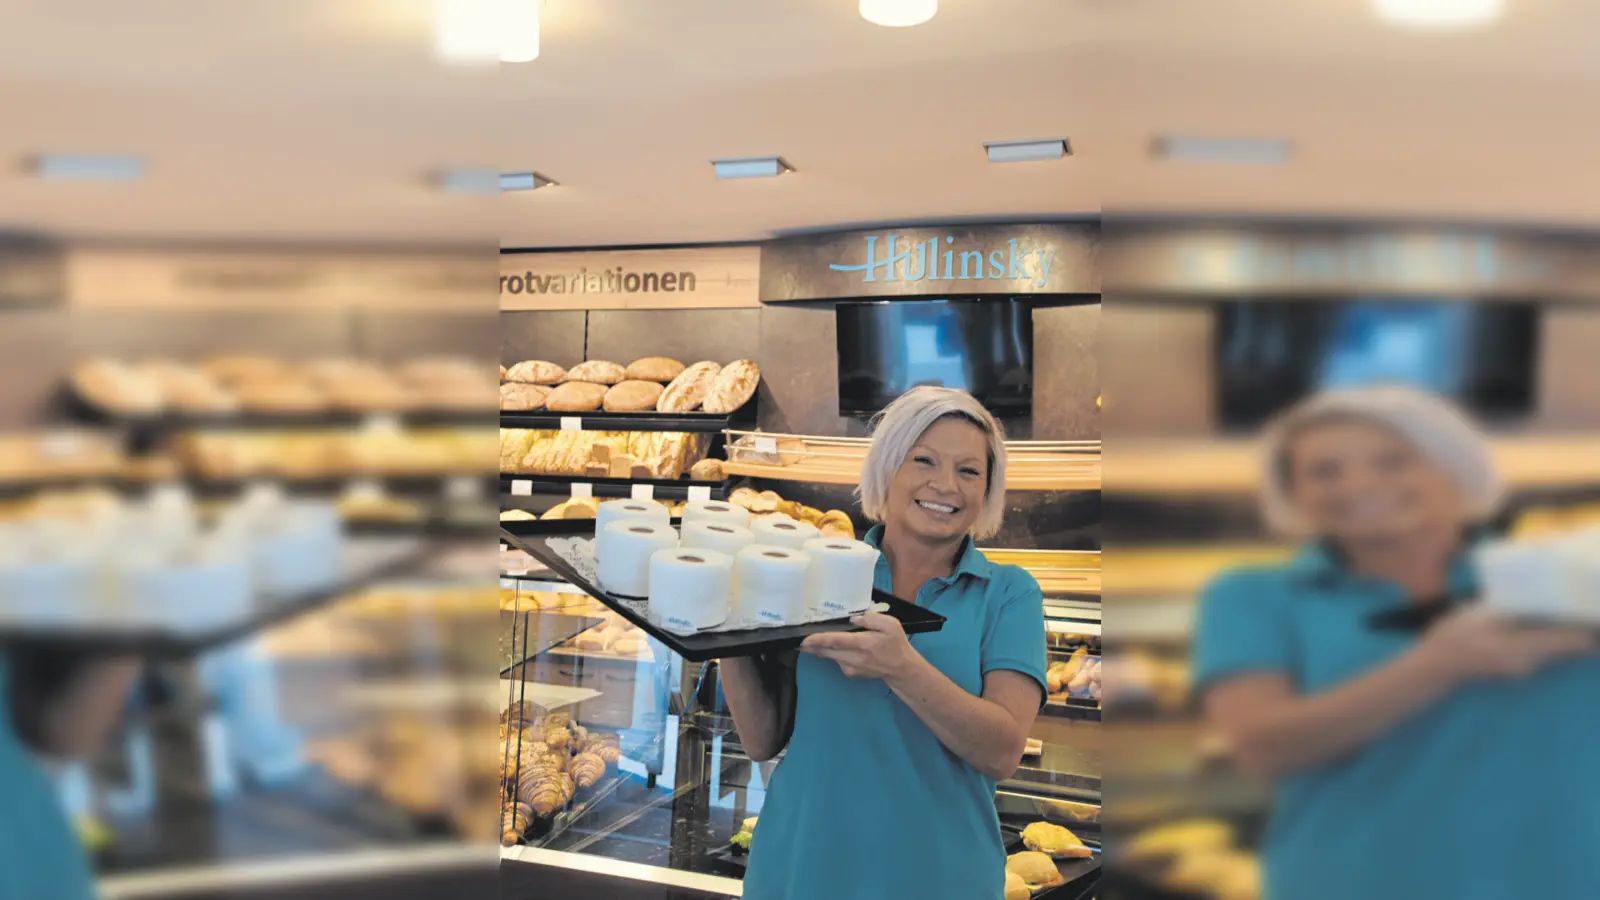 Inhaberin der Bäckerei Hulinsky Katja Westphal mit der neuen Kuchencreation. (Foto: gmu)